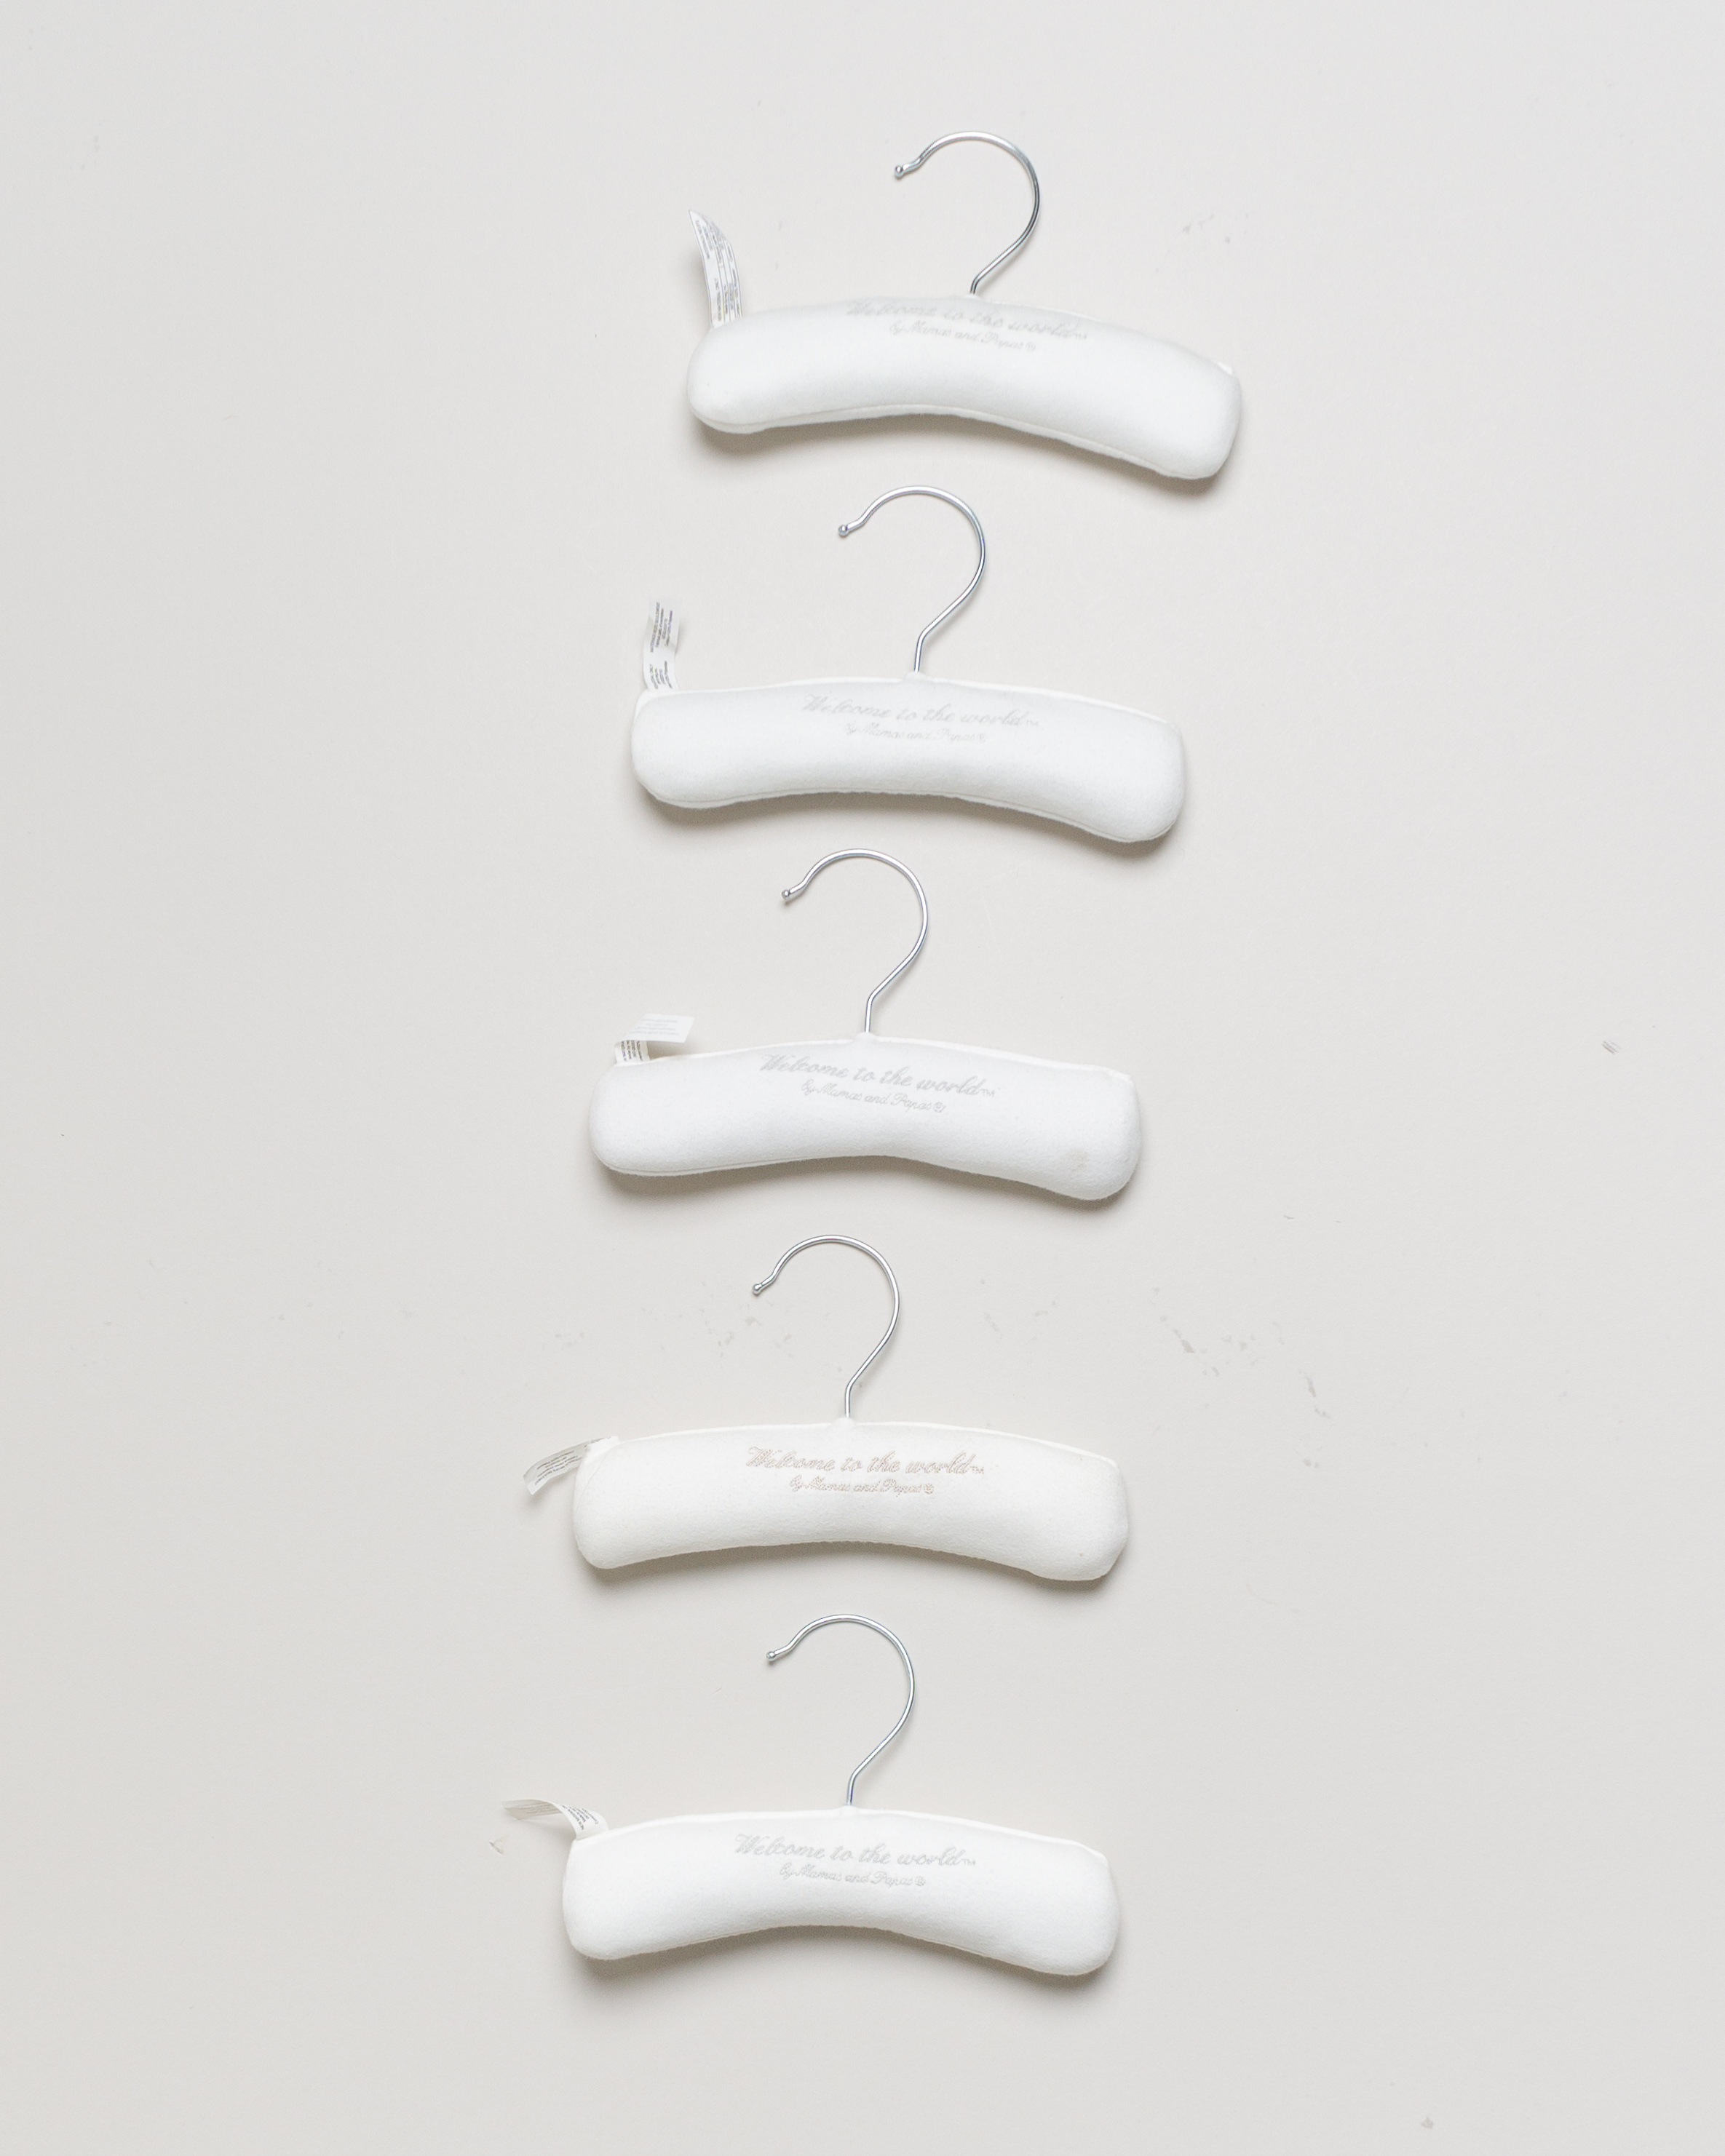 6 Kleiderbügel – mit weichem Stoff bezogen in weiß